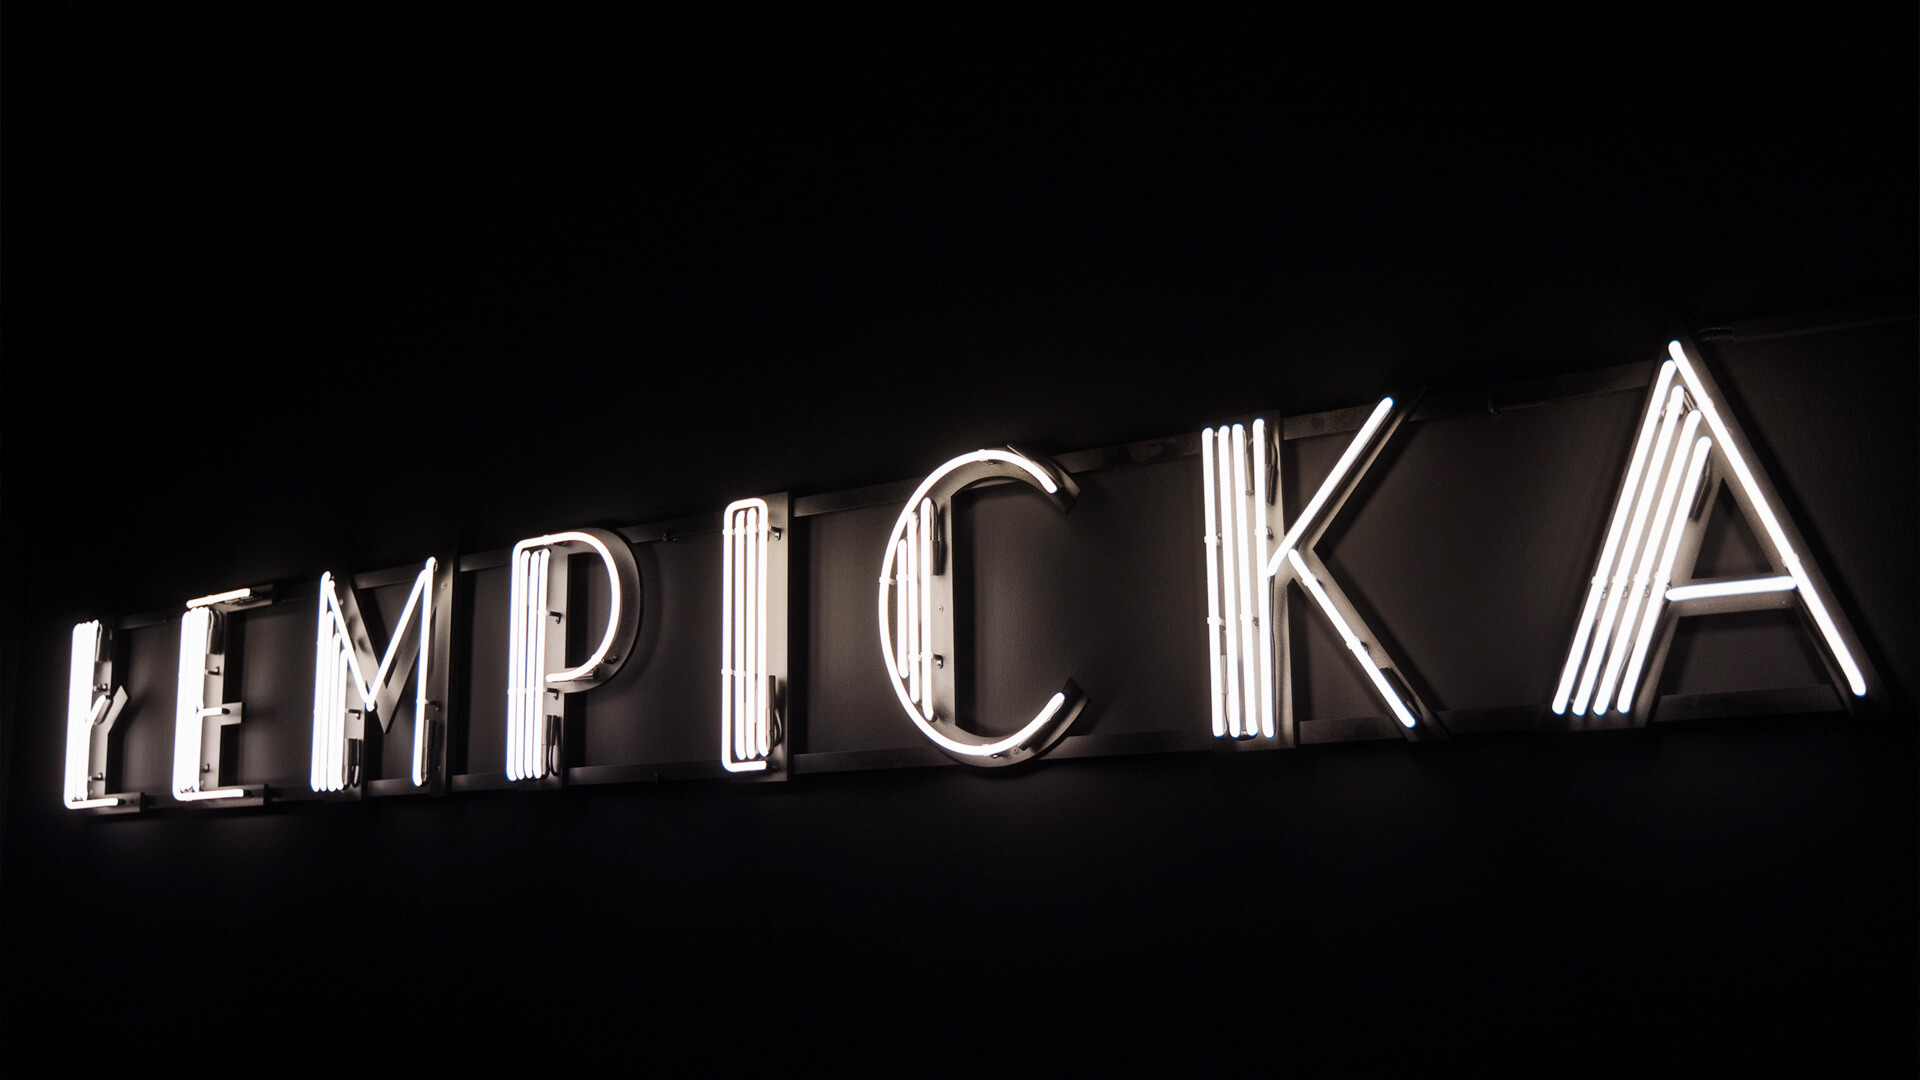 Neon Tamara Lempicka - Mostra con insegna al neon nel museo di Cracovia